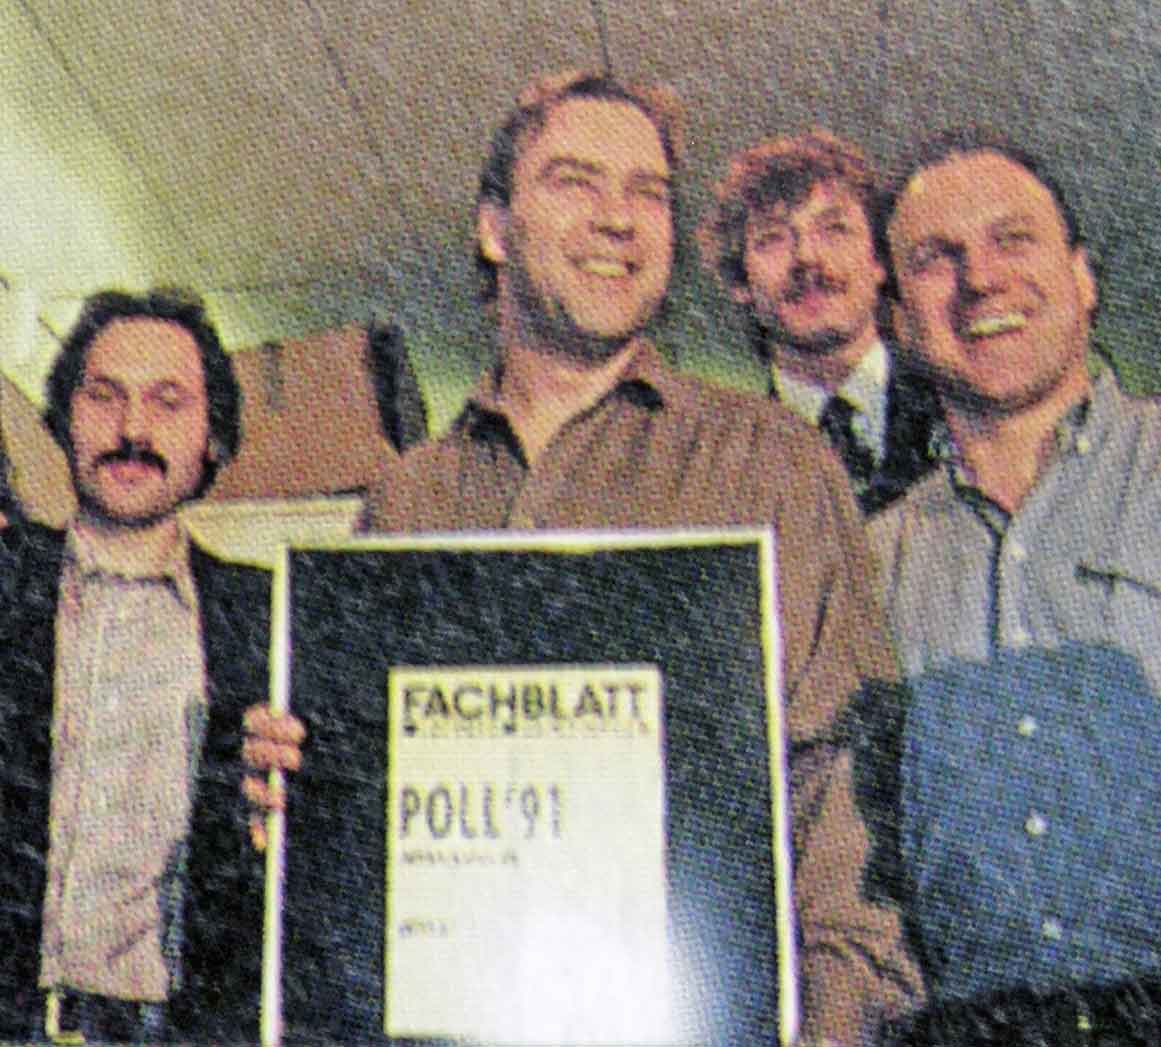 Fachblatt Musikmagazin Poll '91 1. Preis für das Mischpult des Jahres 1991 Mitec Joker Varydesk